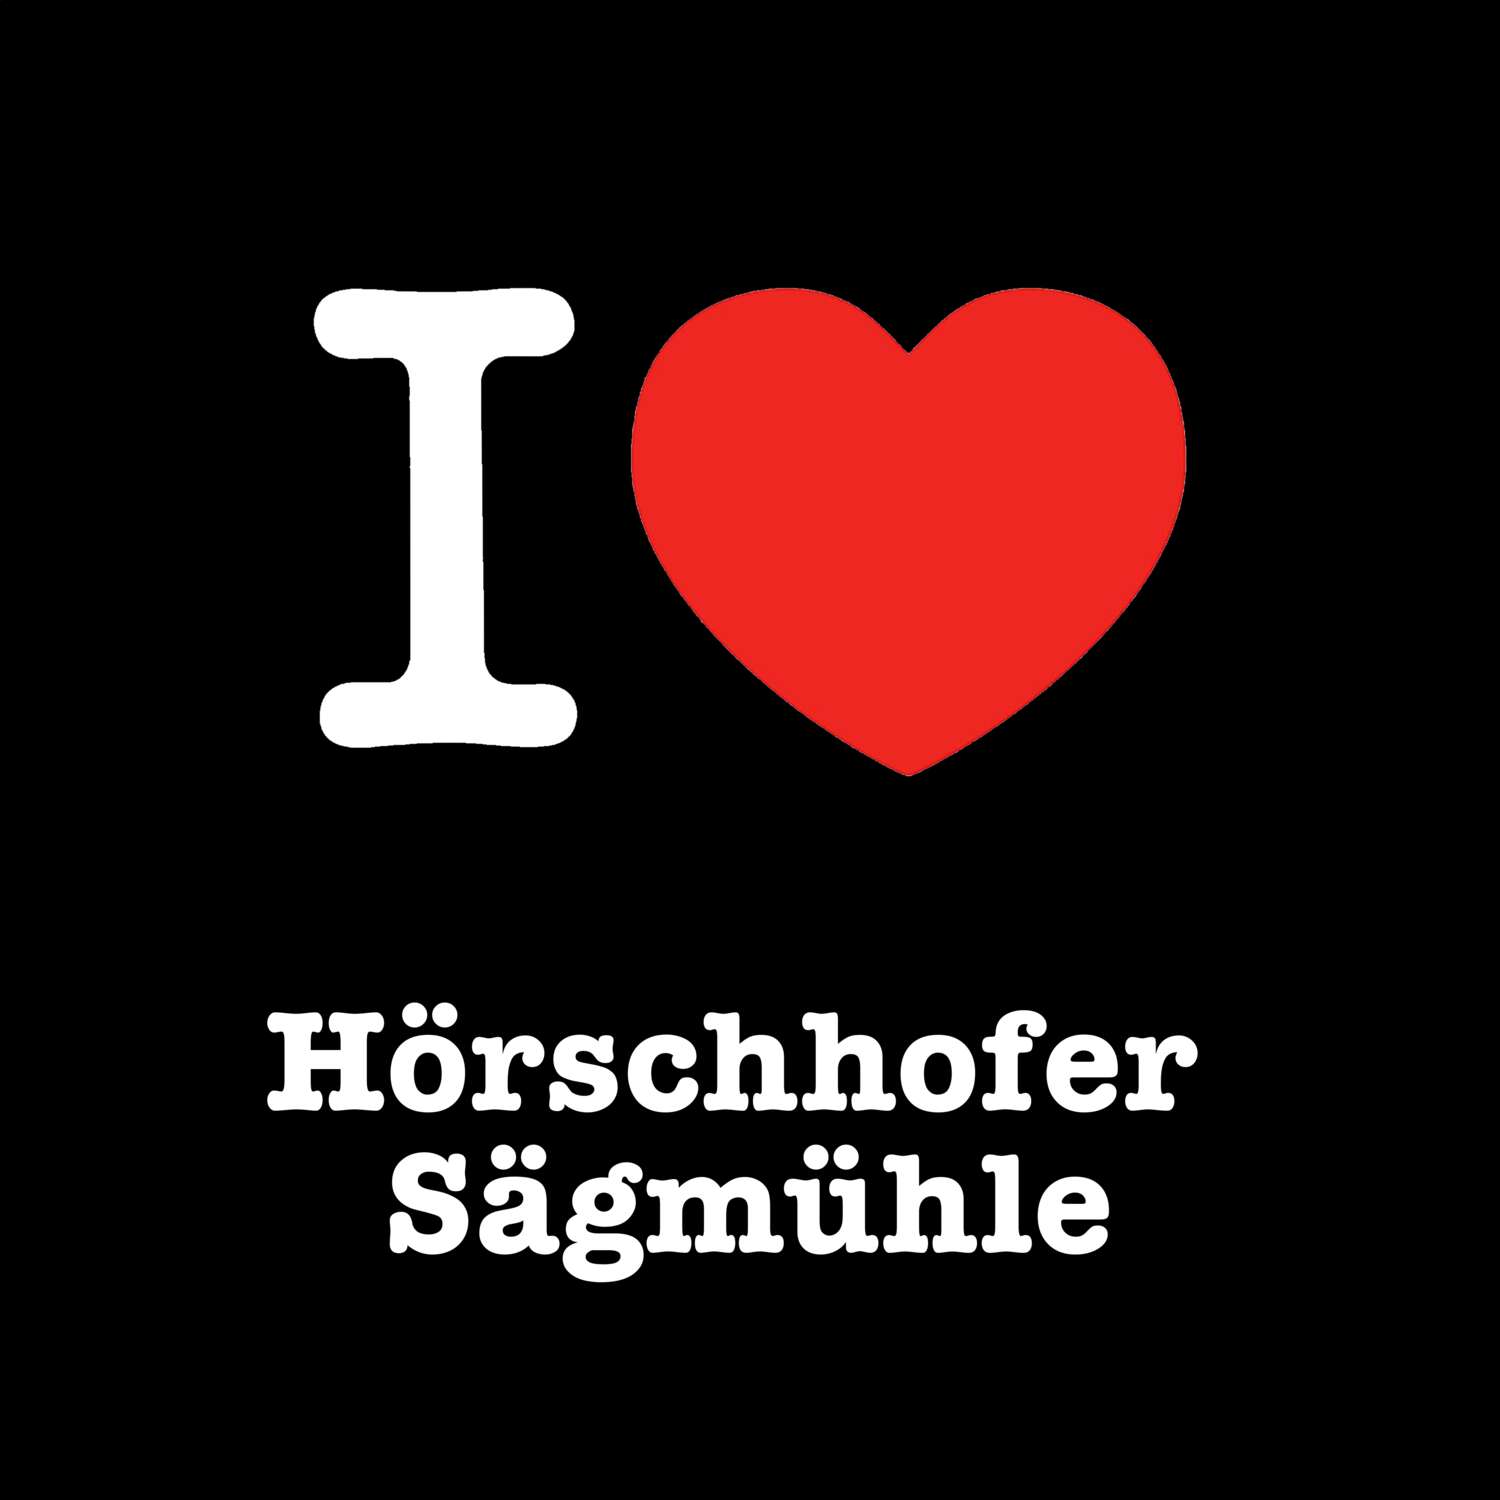 Hörschhofer Sägmühle T-Shirt »I love«